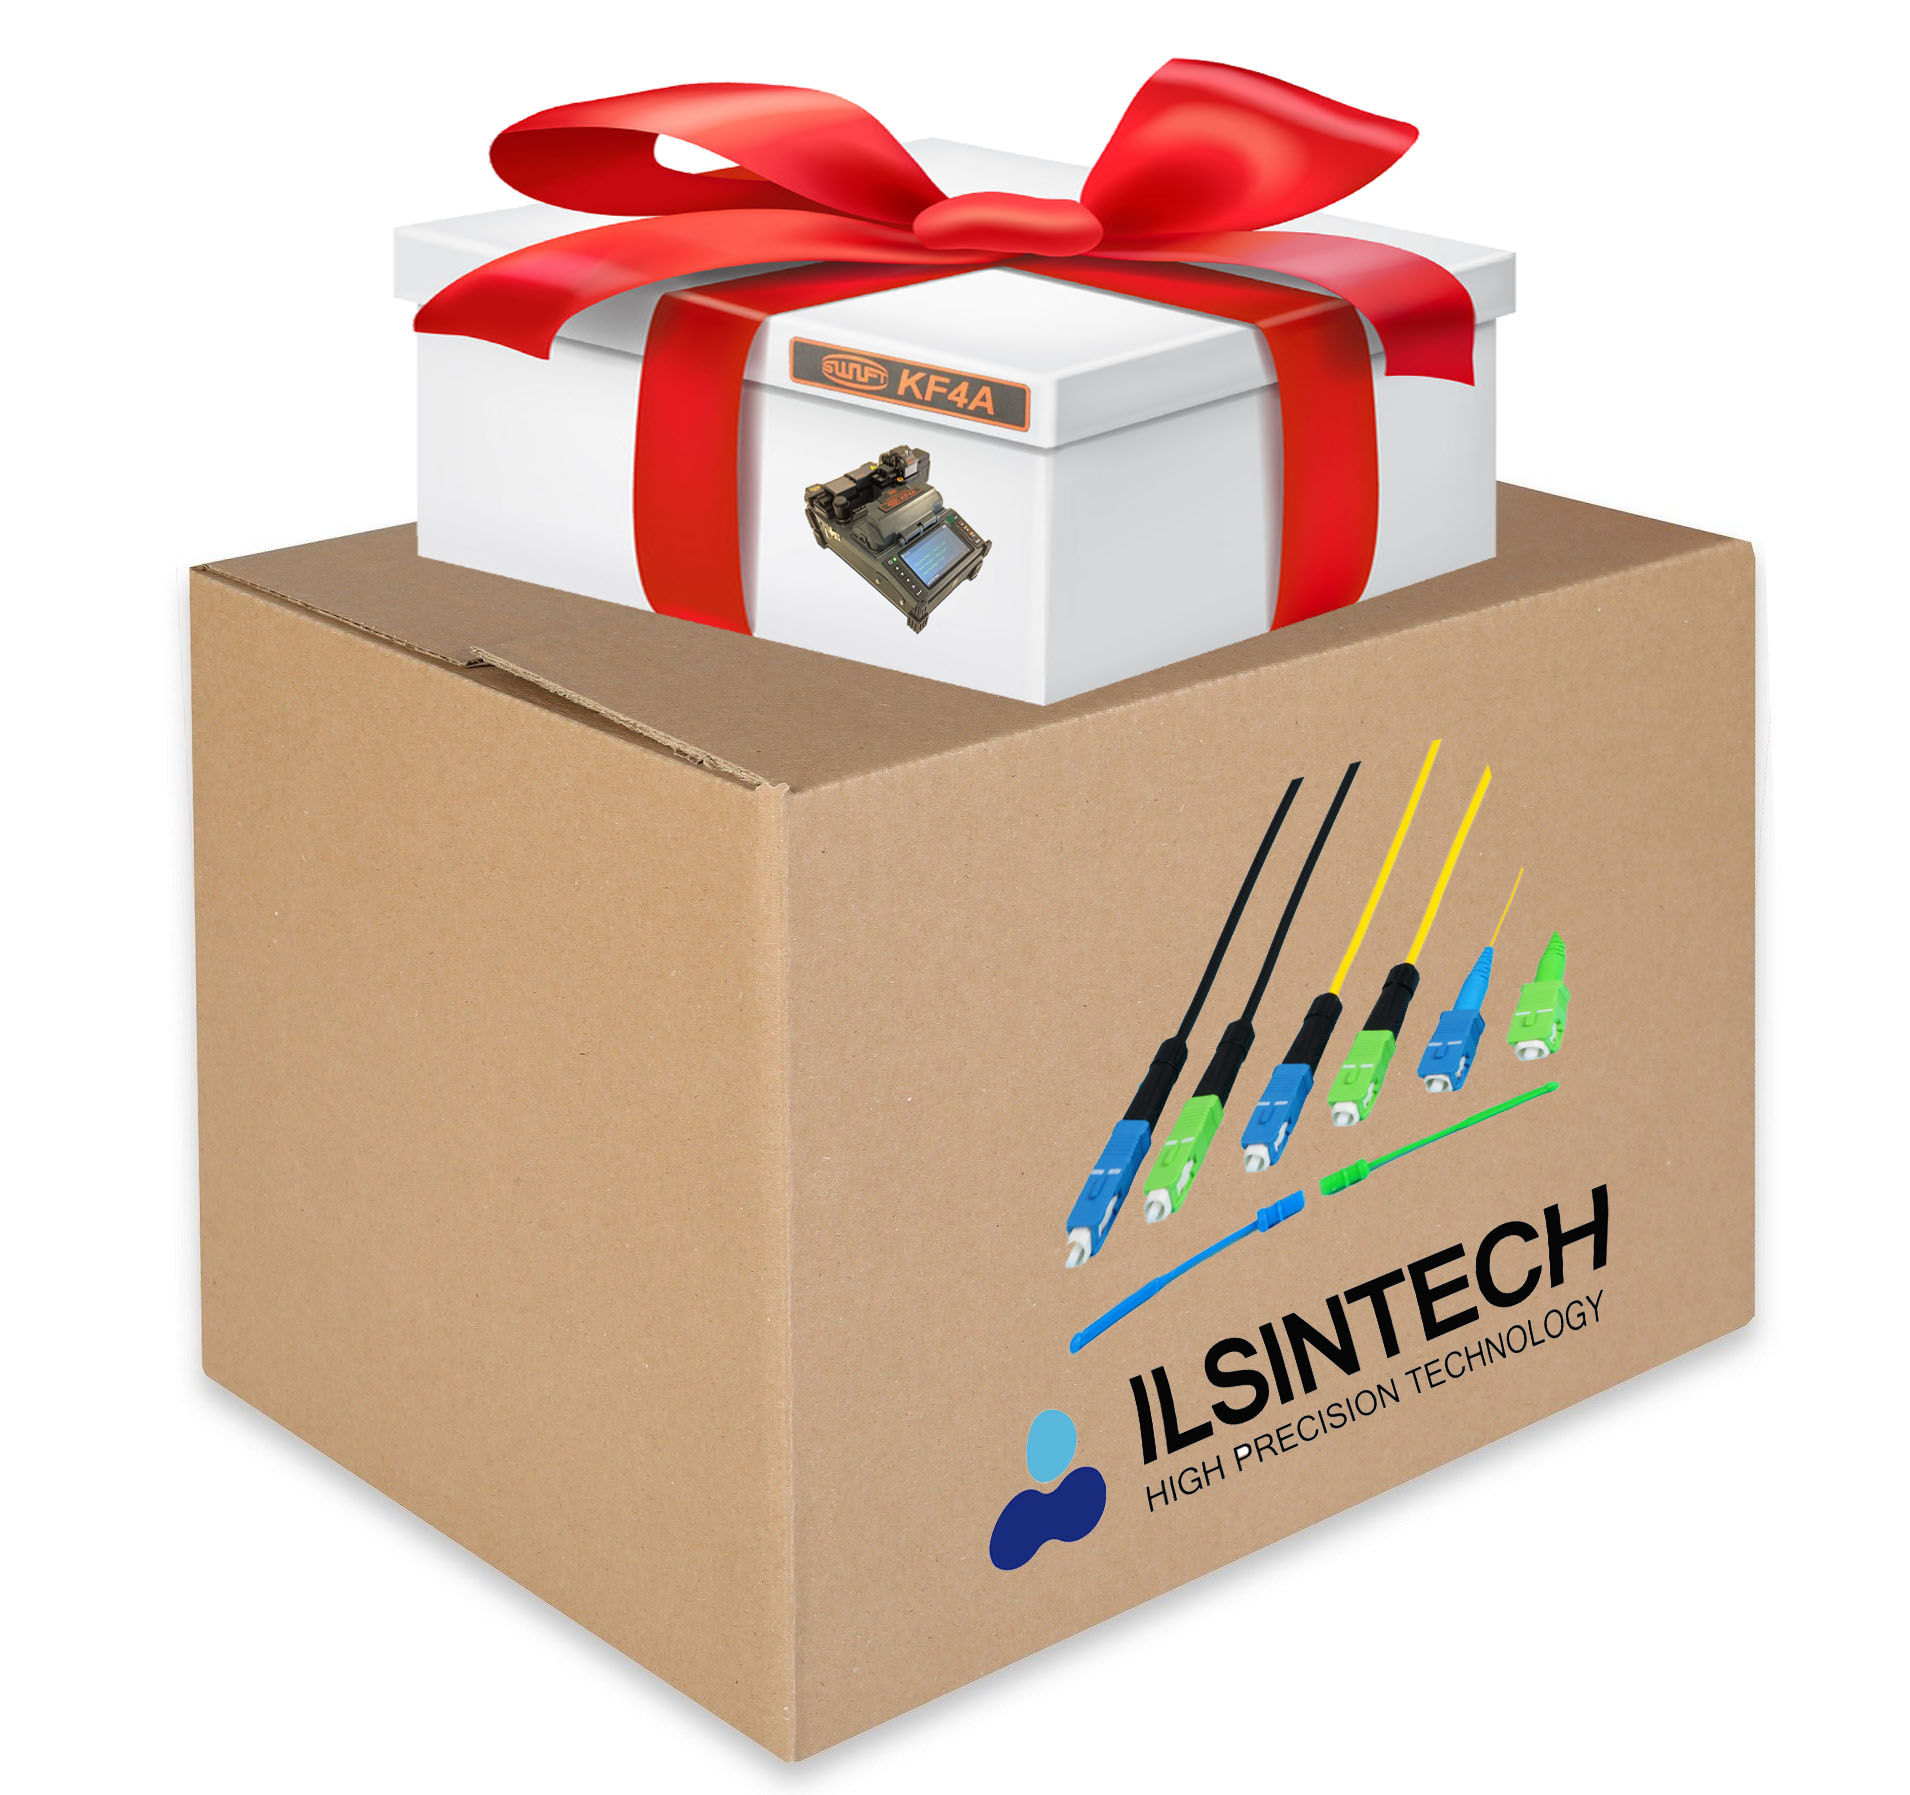  Splice-On коннекторов любого типа и получите сварочный аппарат Ilsintech KF4A в подарок